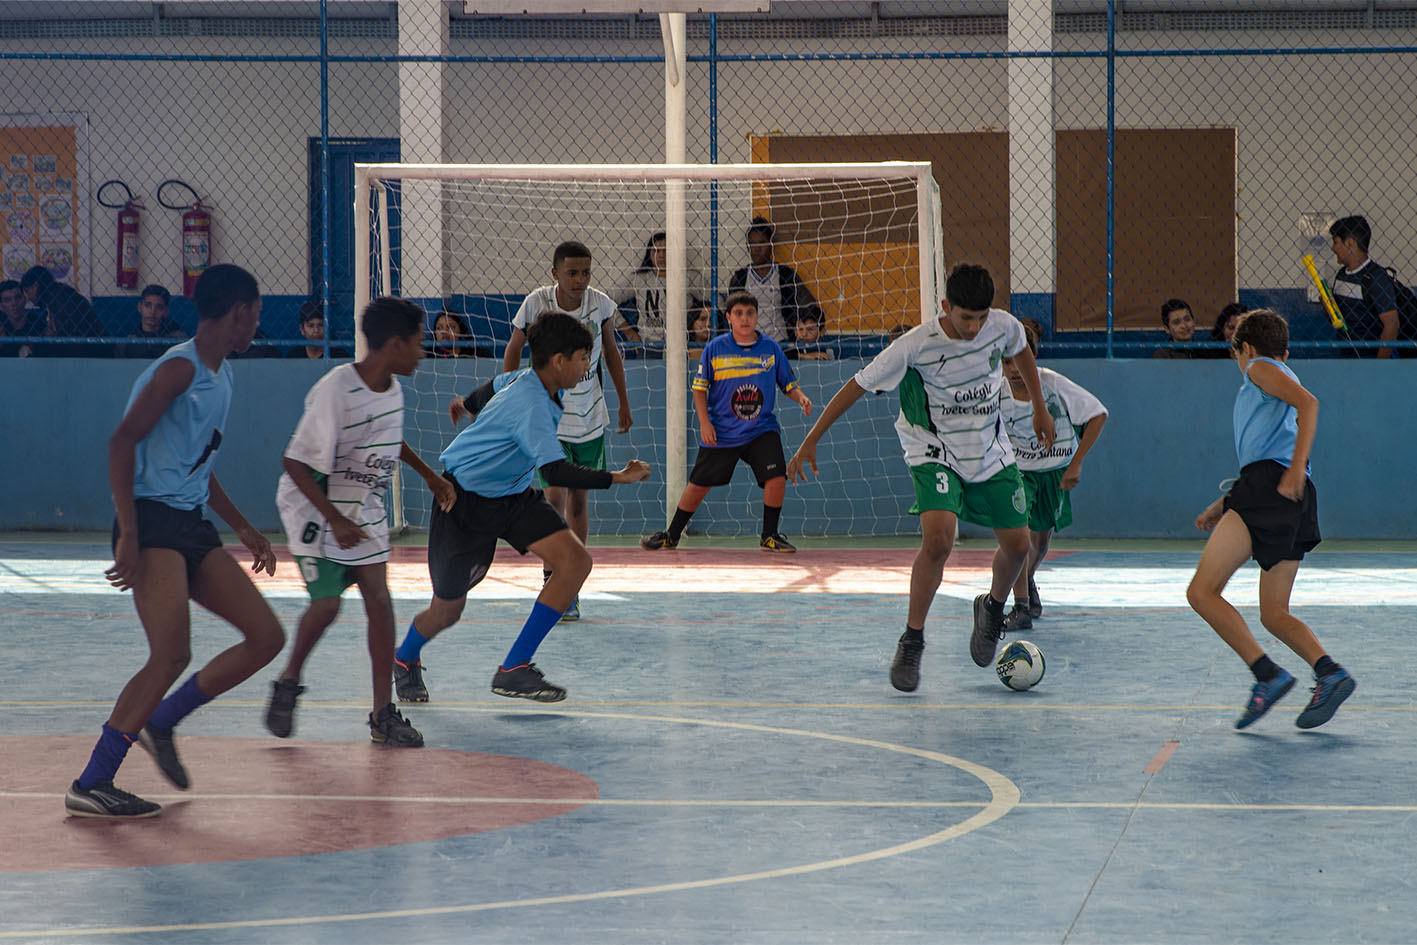 Nesta quinta-feira haverá jogos de vôlei (masculino e feminino) no Ciep Municipal Maringá